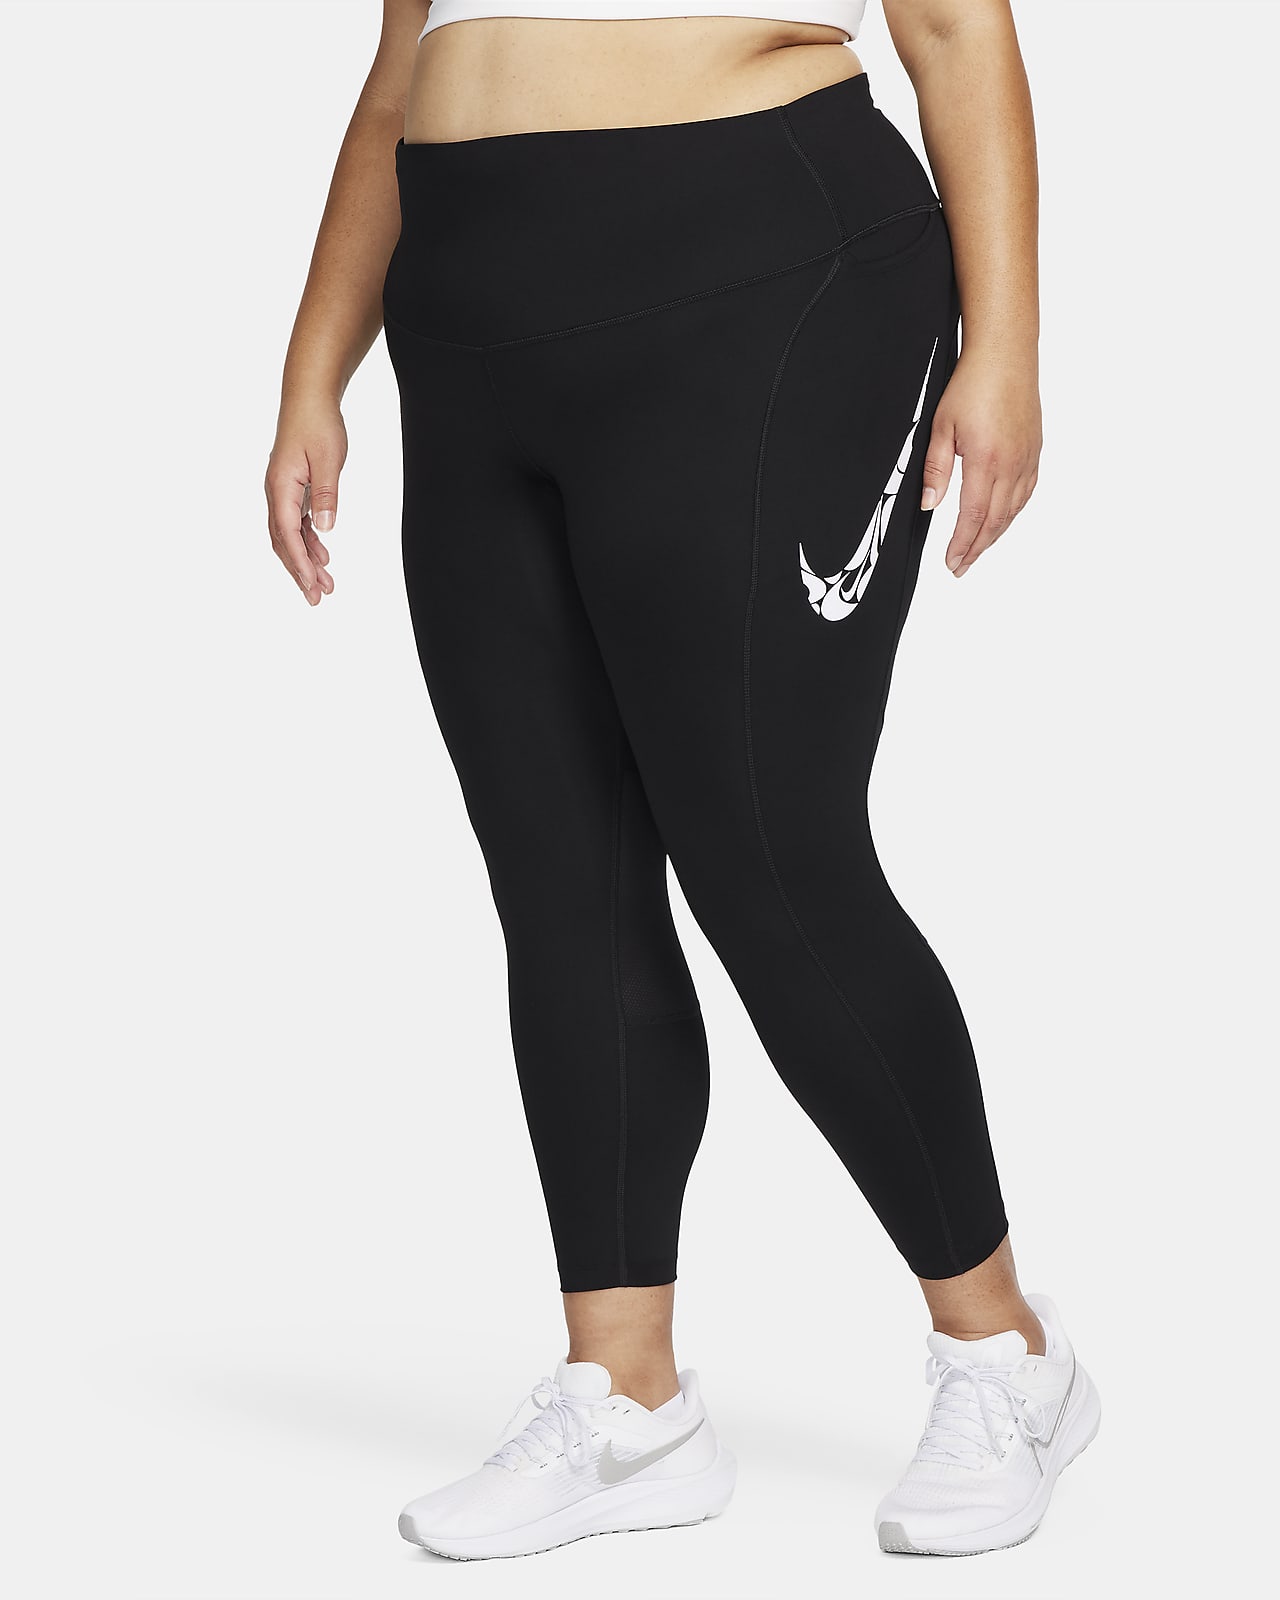 Γυναικείο κολάν μεσαίου ύψους 7/8 για τρέξιμο με τσέπες Nike Fast (μεγάλα μεγέθη)